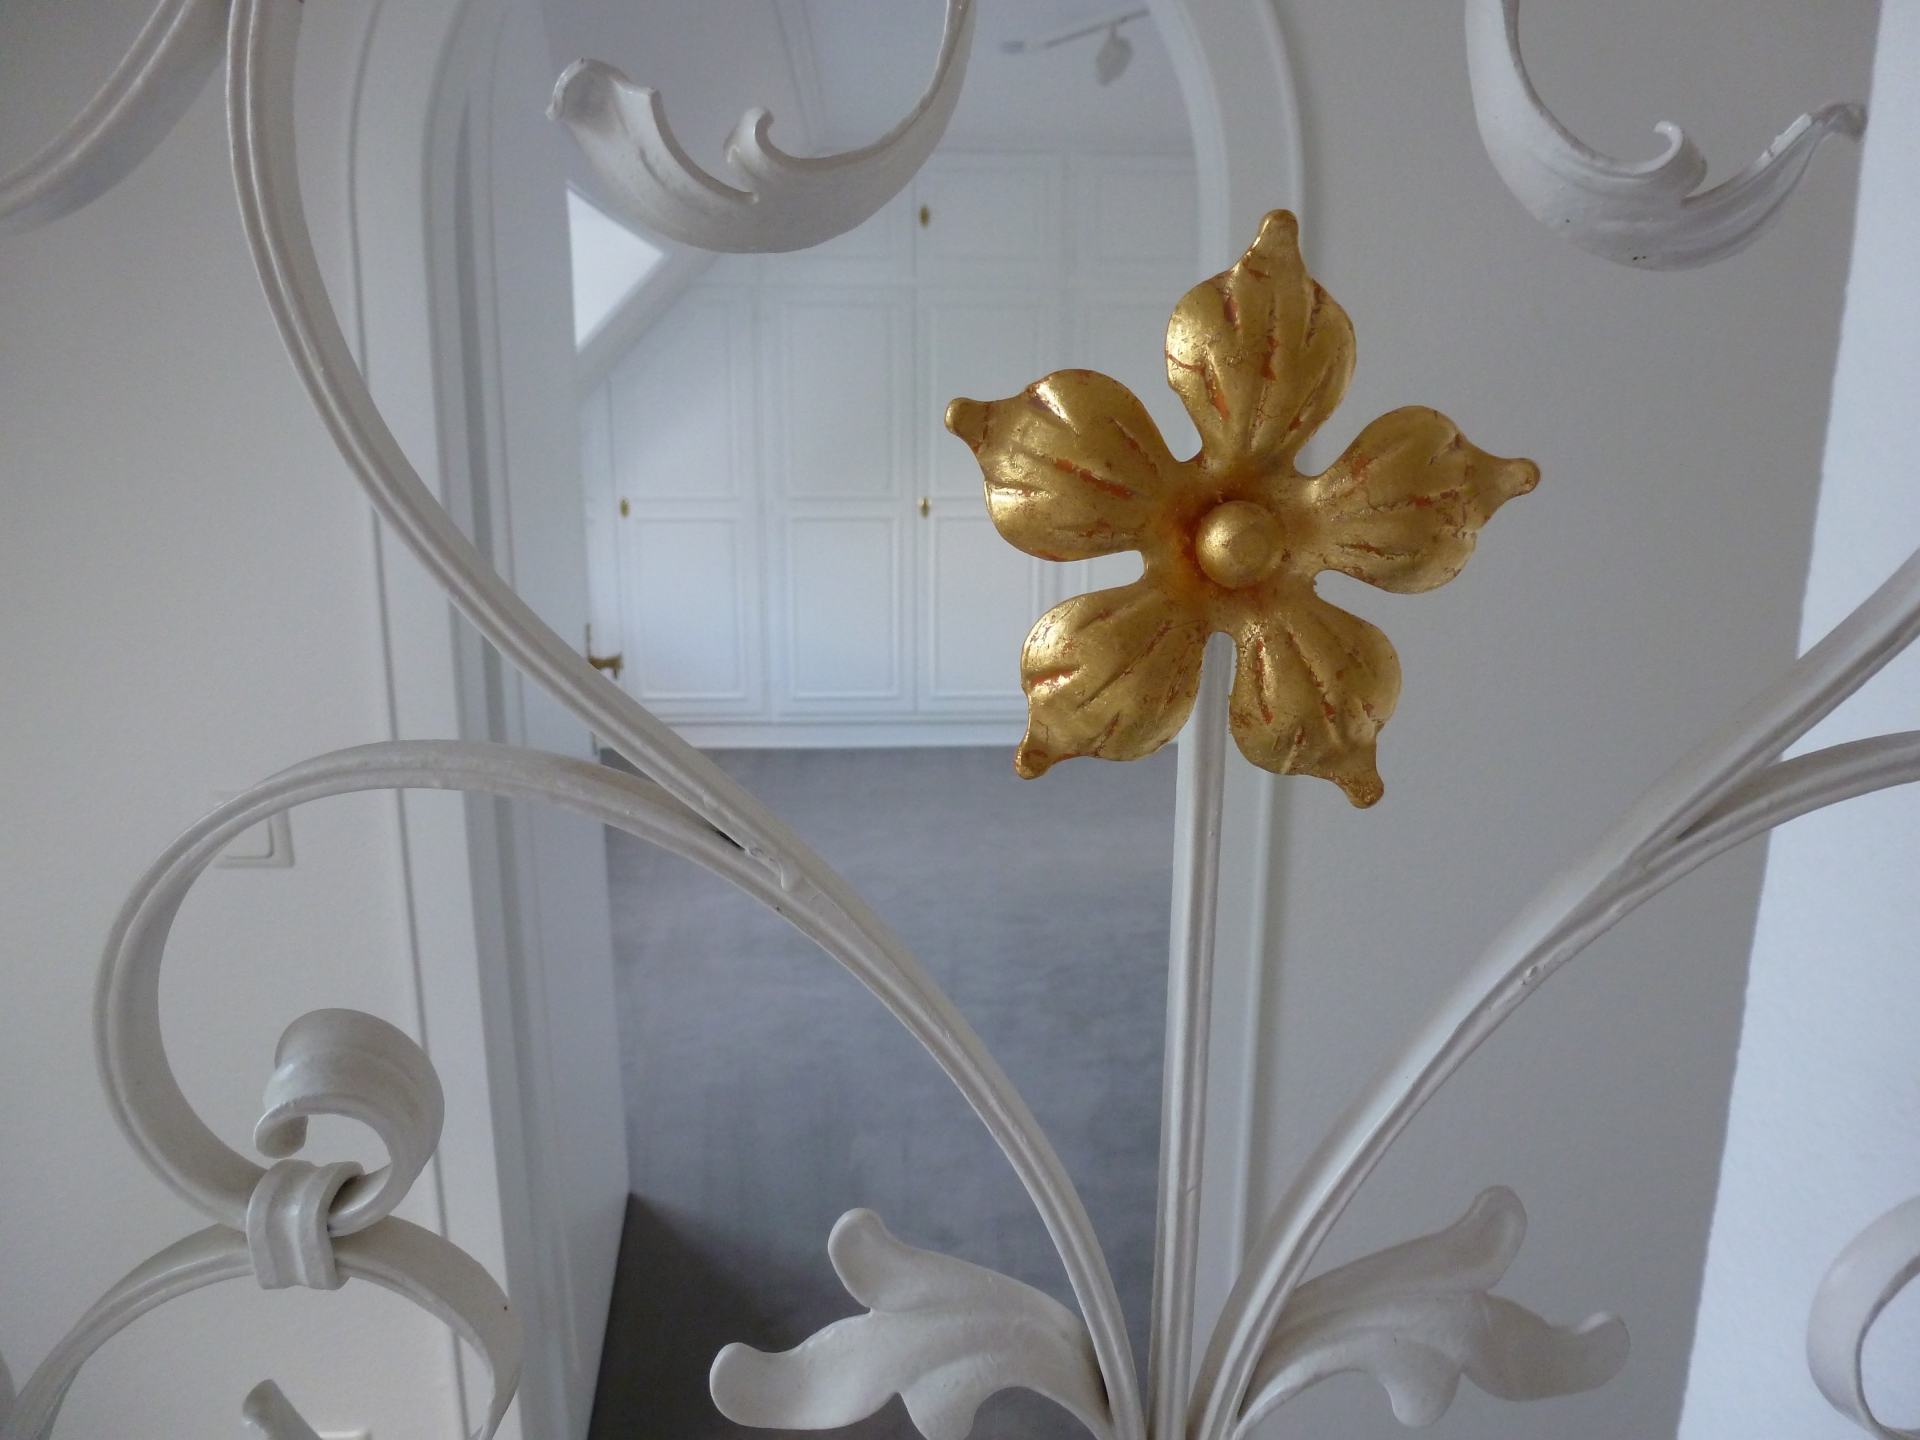 2020 07 08 Maler für Wedel und Hamburg Innenarbeiten Blattgold Blume